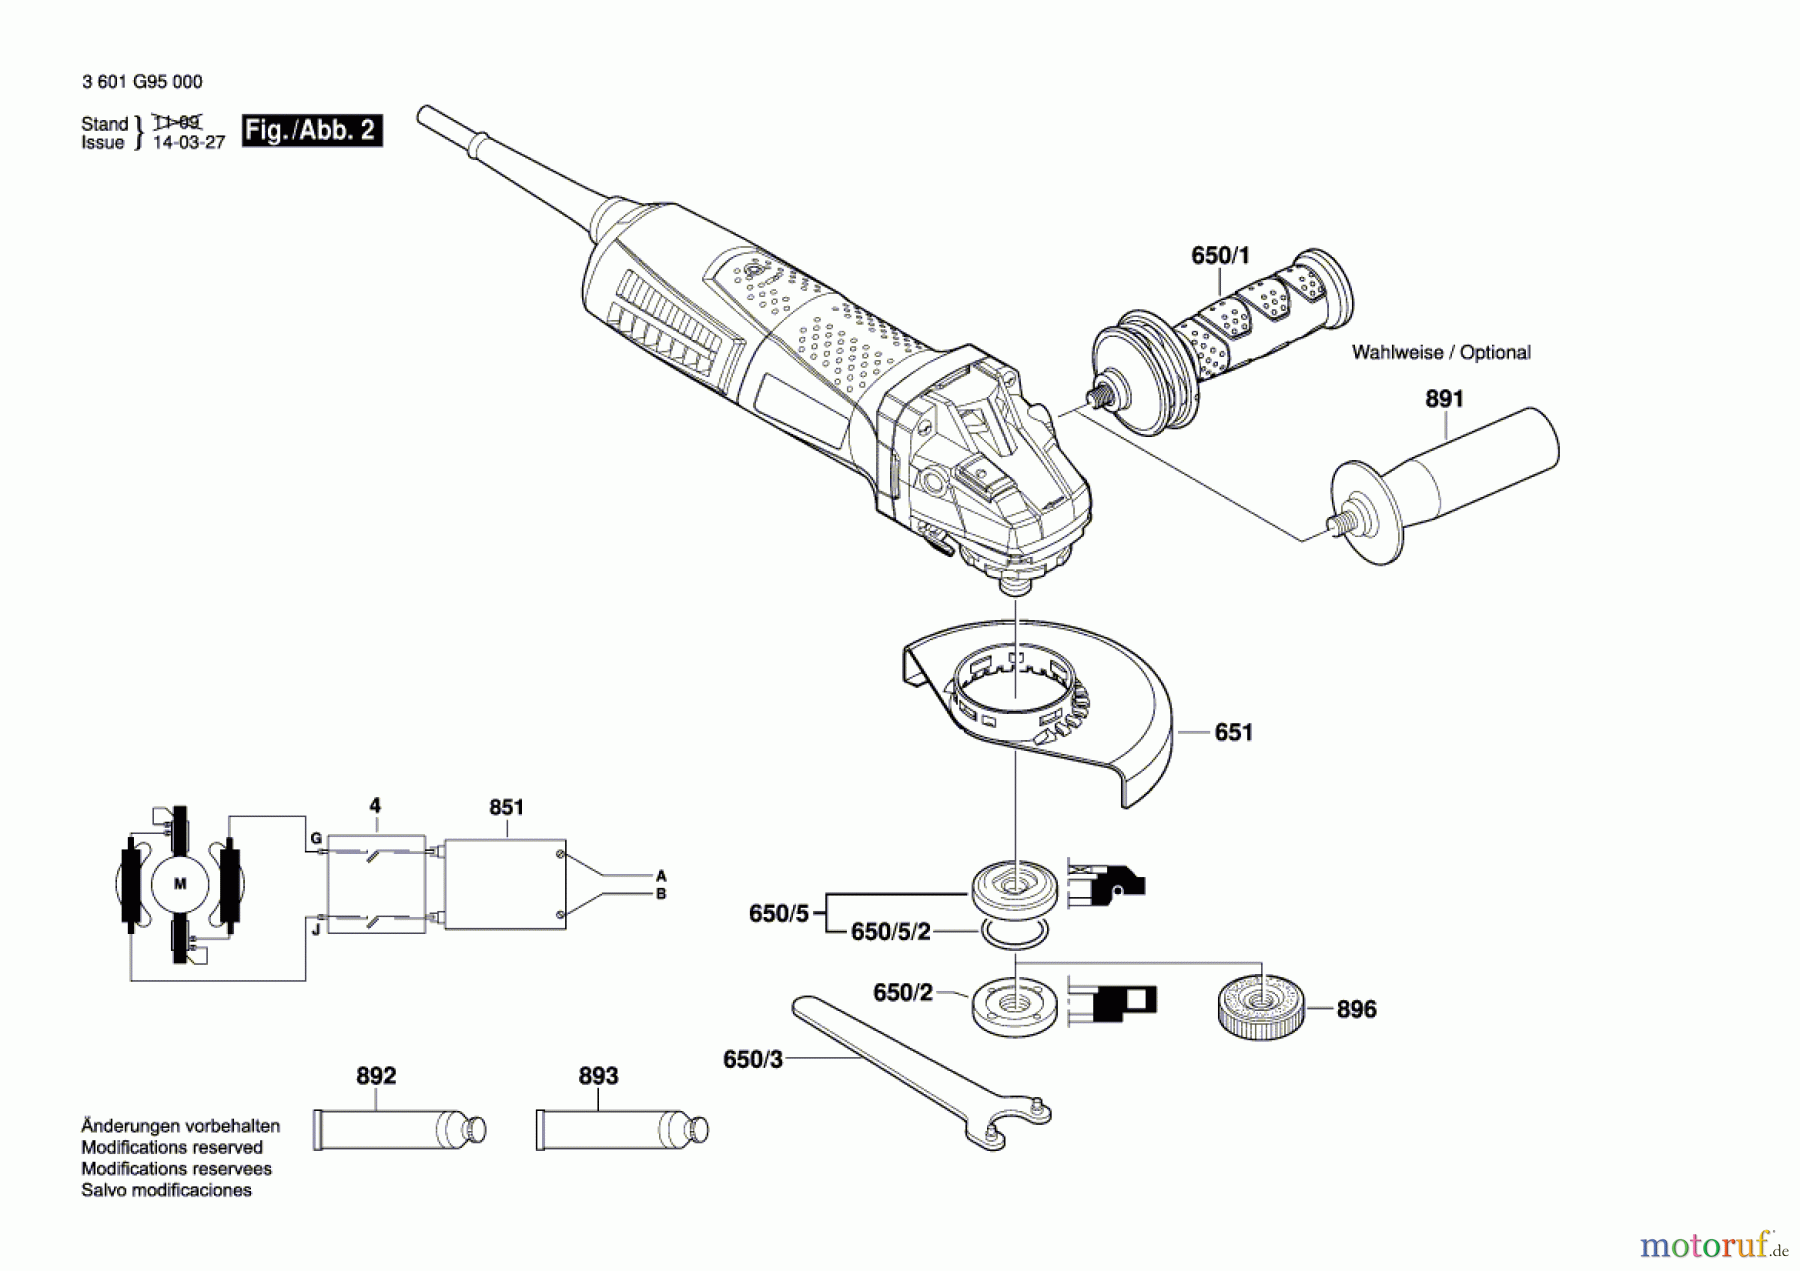  Bosch Werkzeug Winkelschleifer GWS 15-125 CI Seite 2